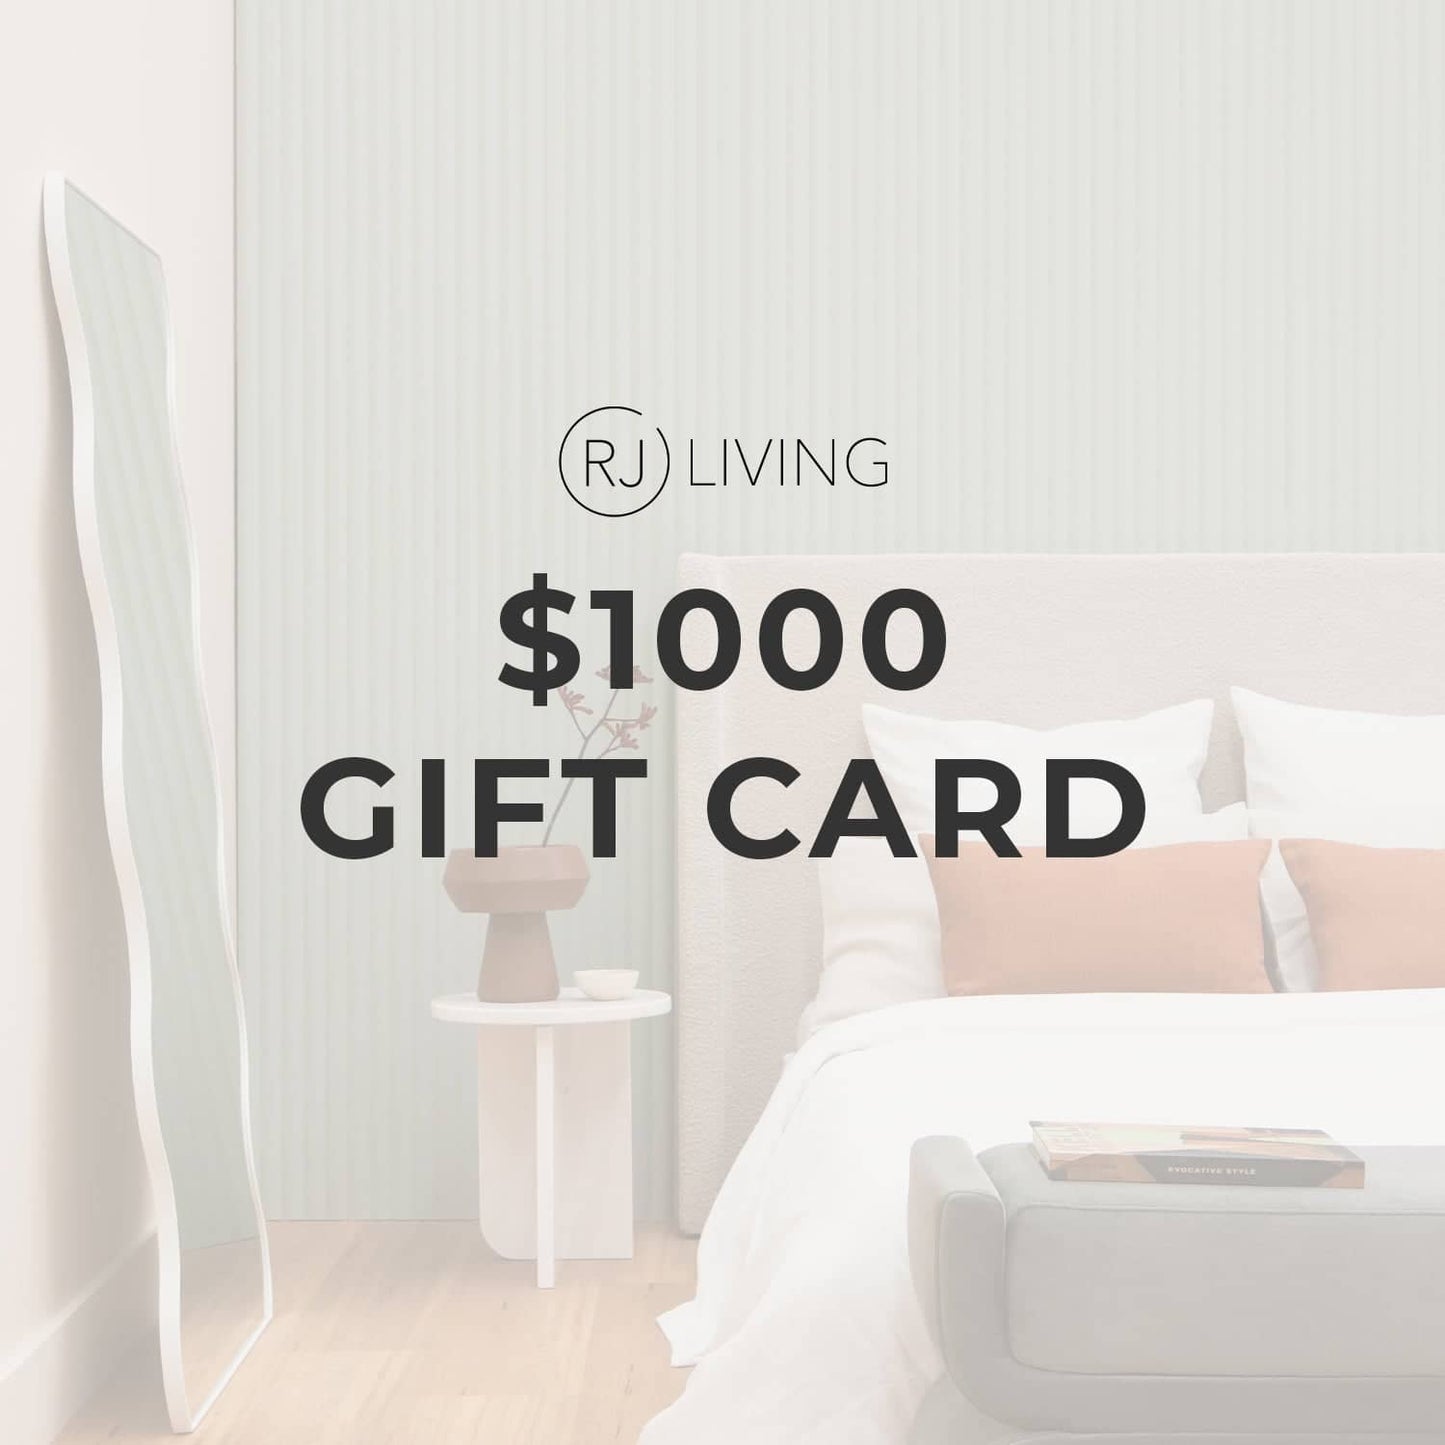 $1000 RJ Living Gift Card